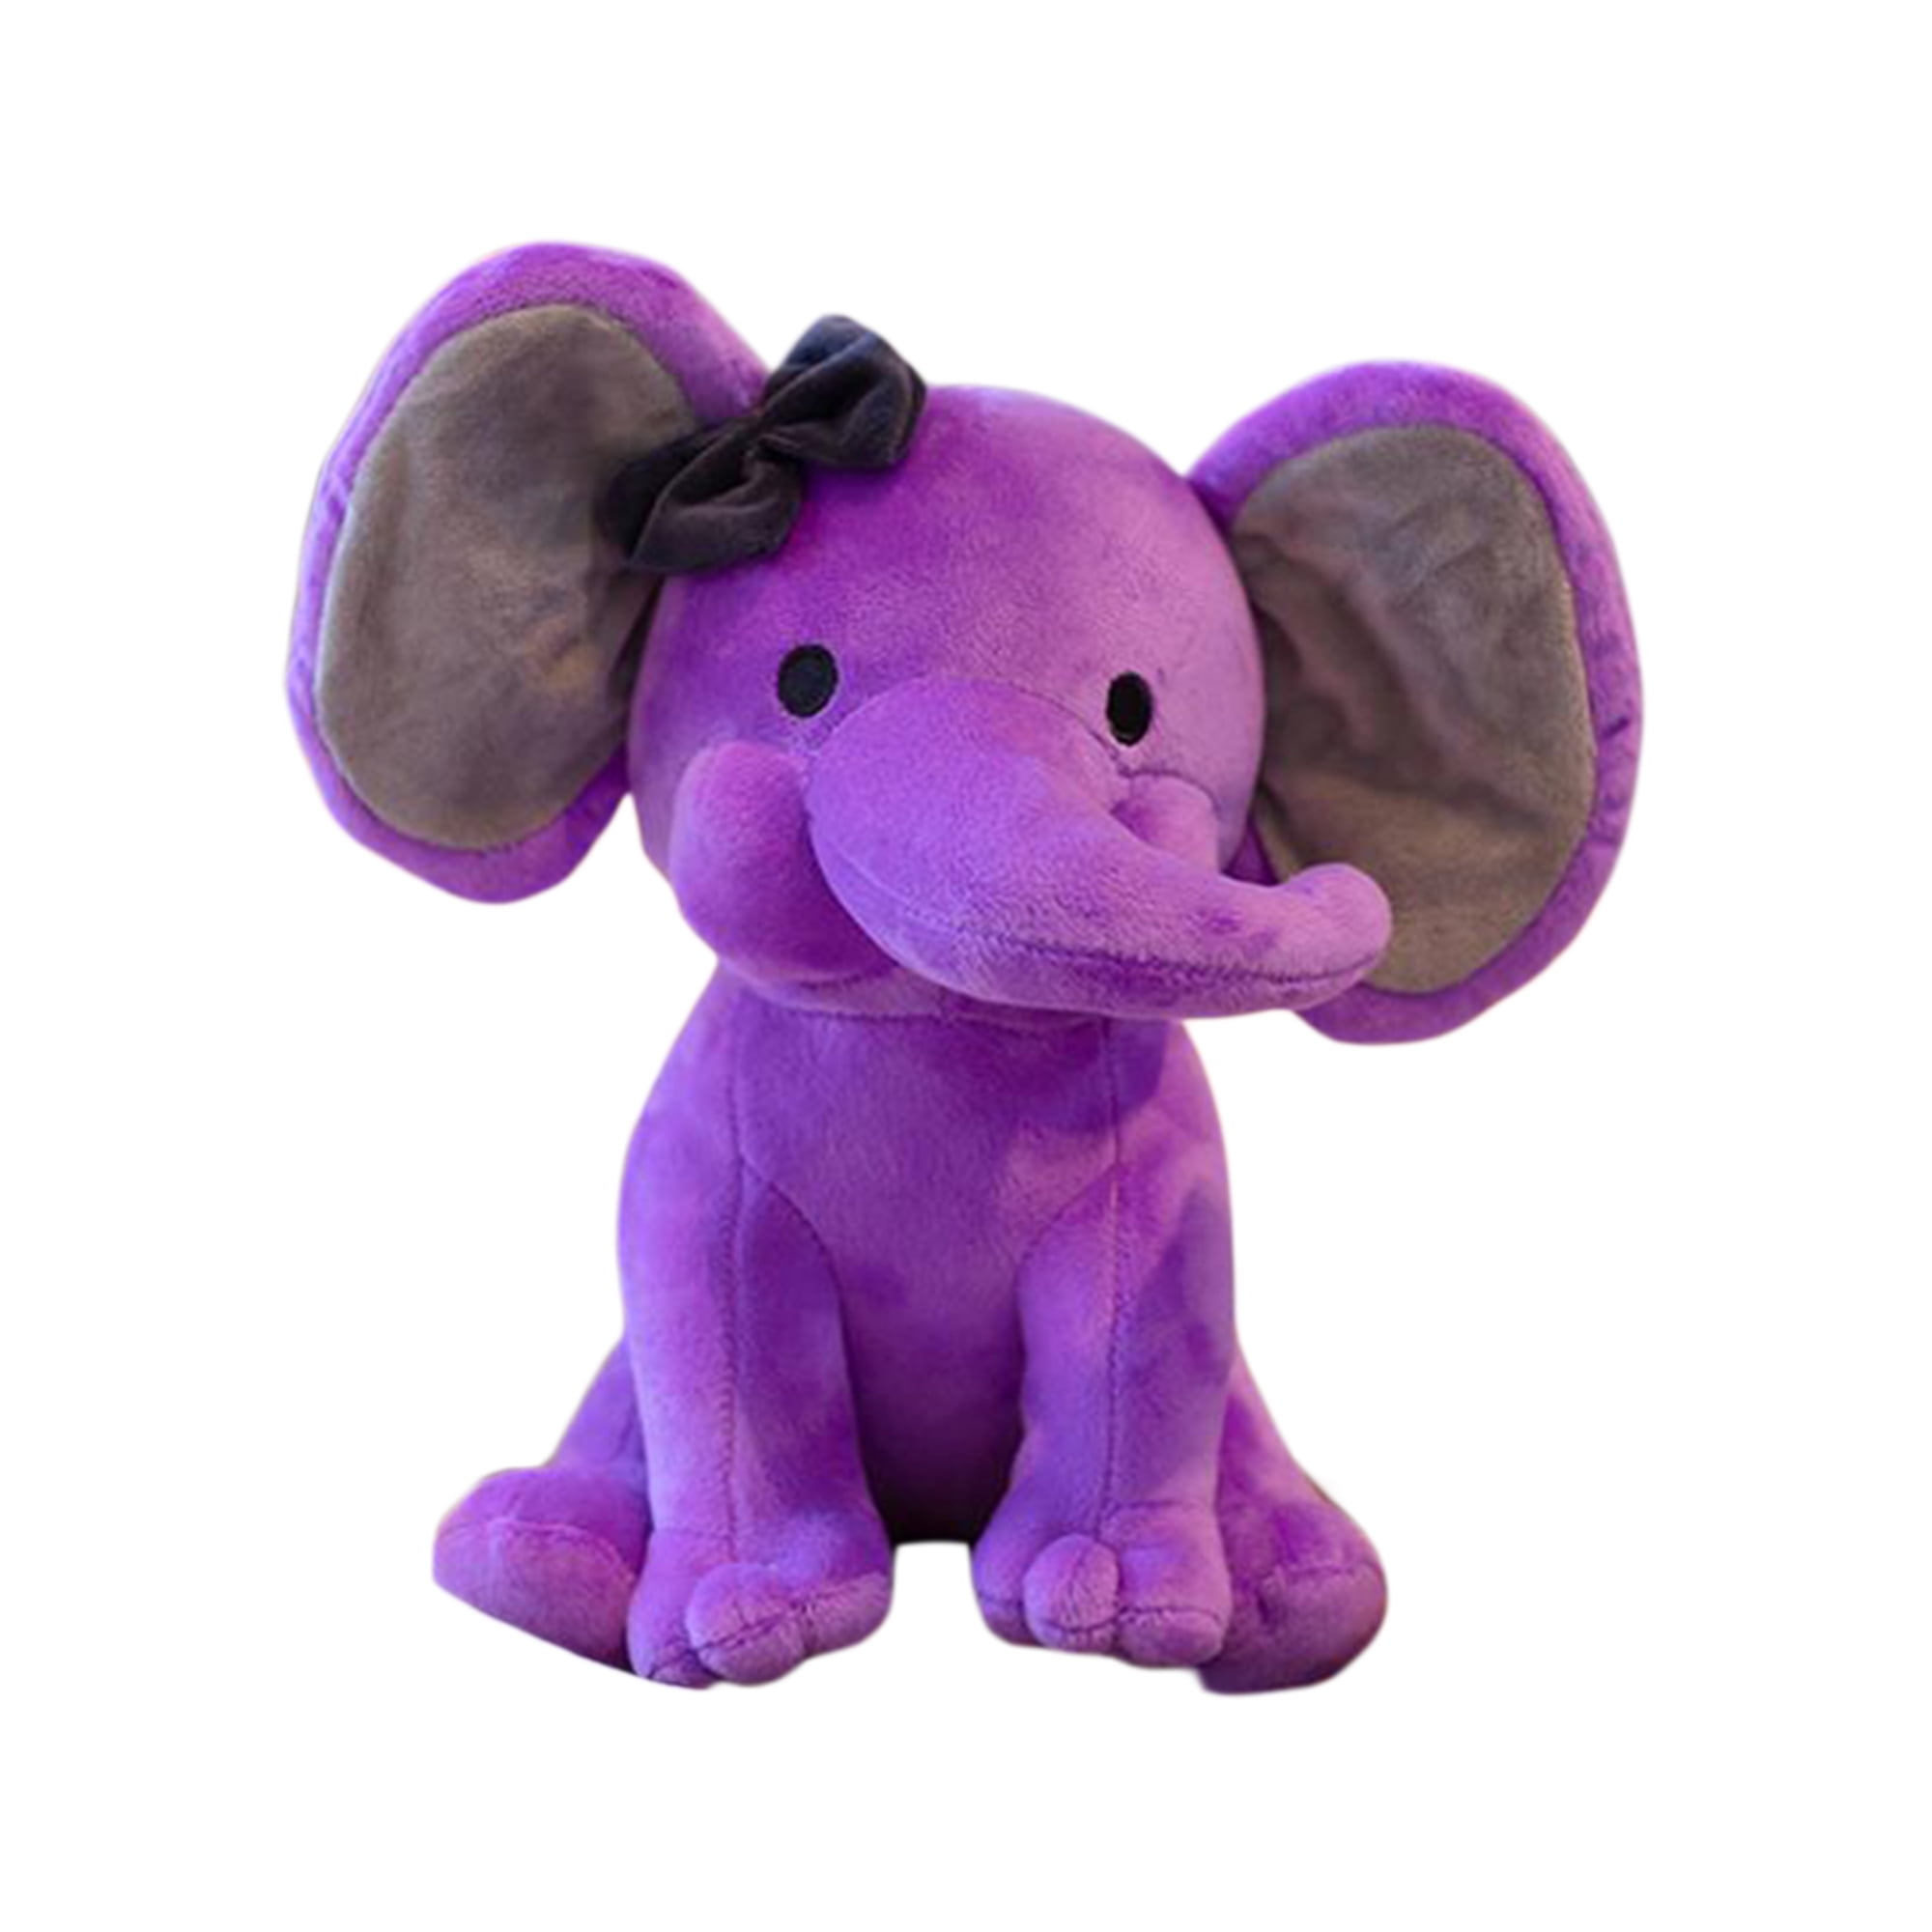 Elephant plush toy,small elephant stuffed animal,Pink elephant plush toy,22CM 